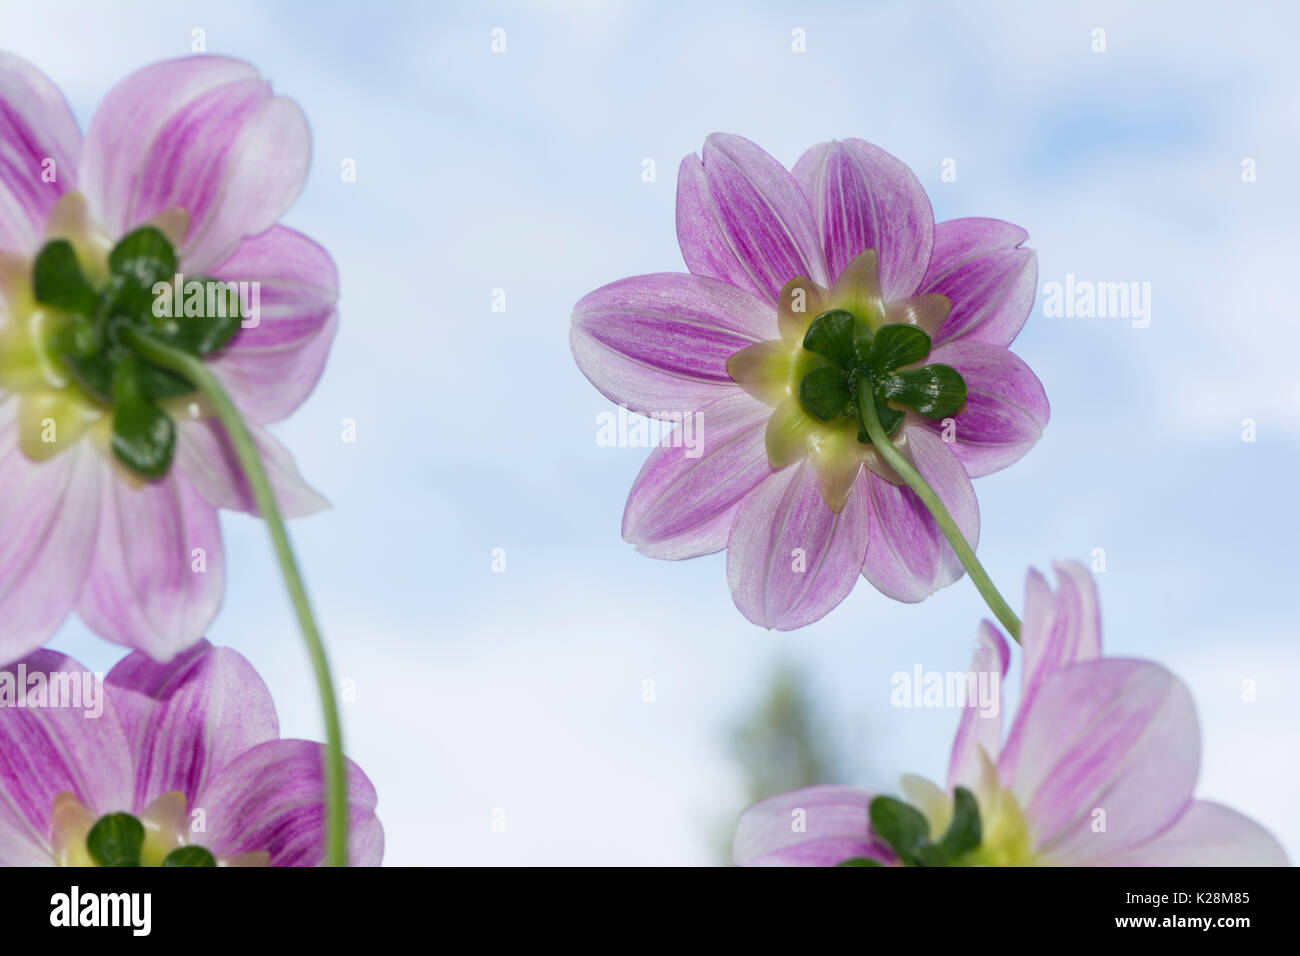 Vue arrière d'un groupe de quatre de couleur rose/Mauve et blanc Aegean Sky dahlia fleurs avec le ciel comme arrière-plan. faible se concentrer uniquement sur les fleurs principales Banque D'Images